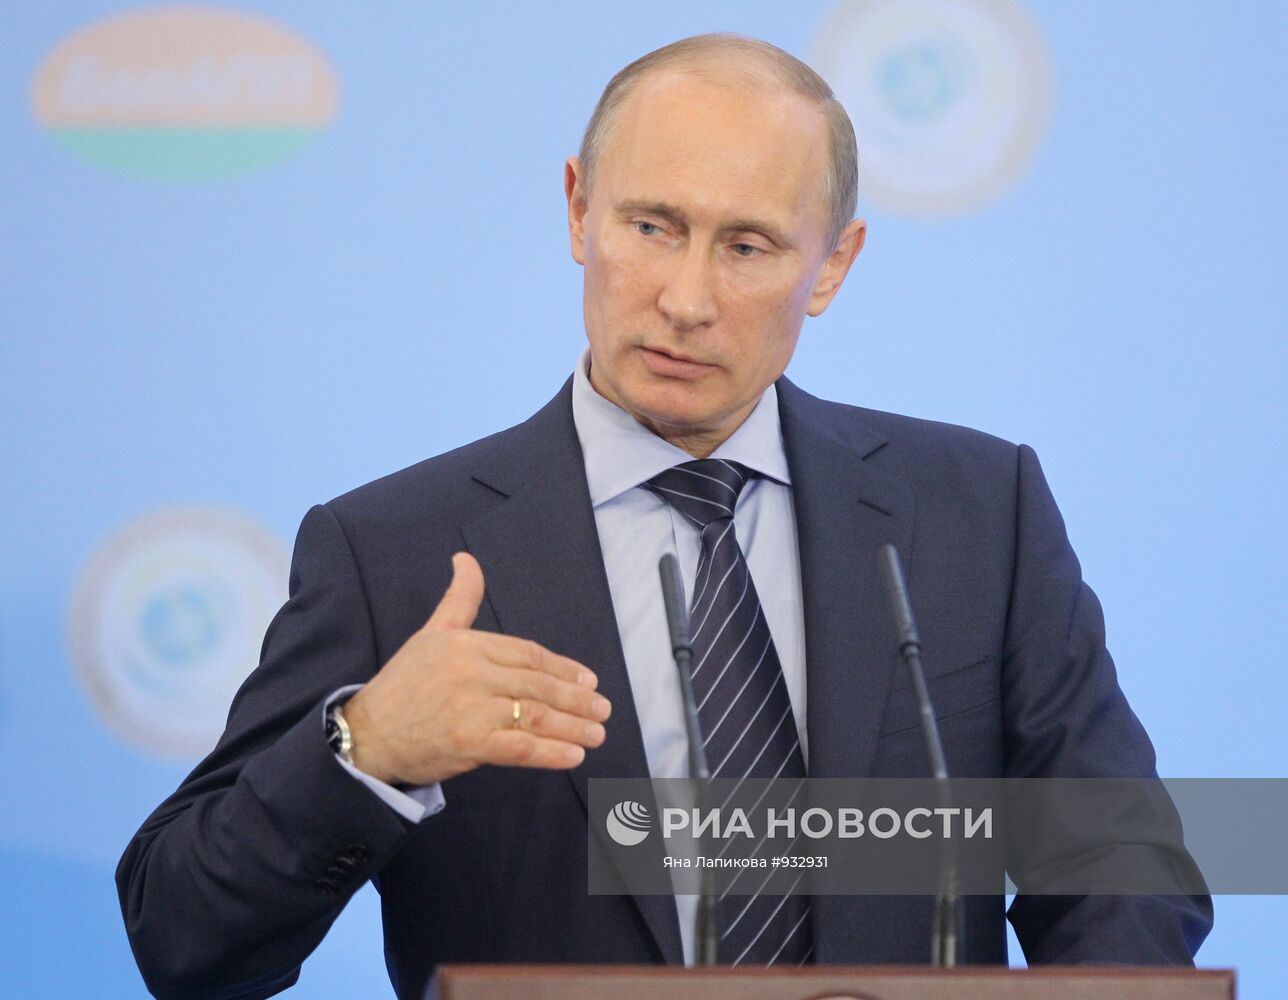 Премьер-министр РФ В.Путин принимает участие в конференции